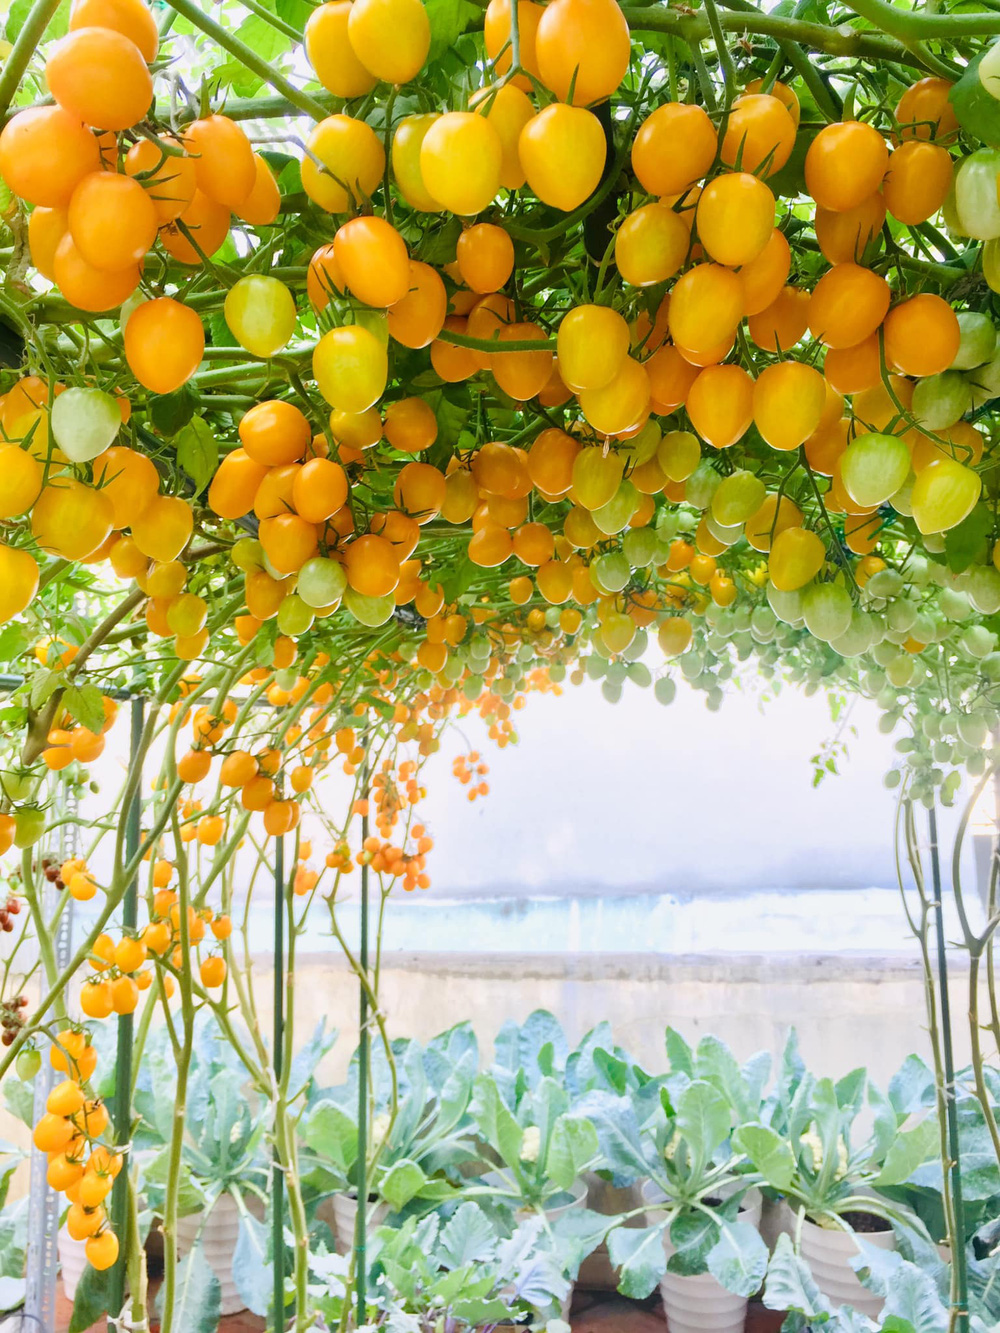 Giàn cà chua cả nghìn quả chín đồng loạt trên sân thượng giữa Sài Gòn gây choáng - Ảnh 3.